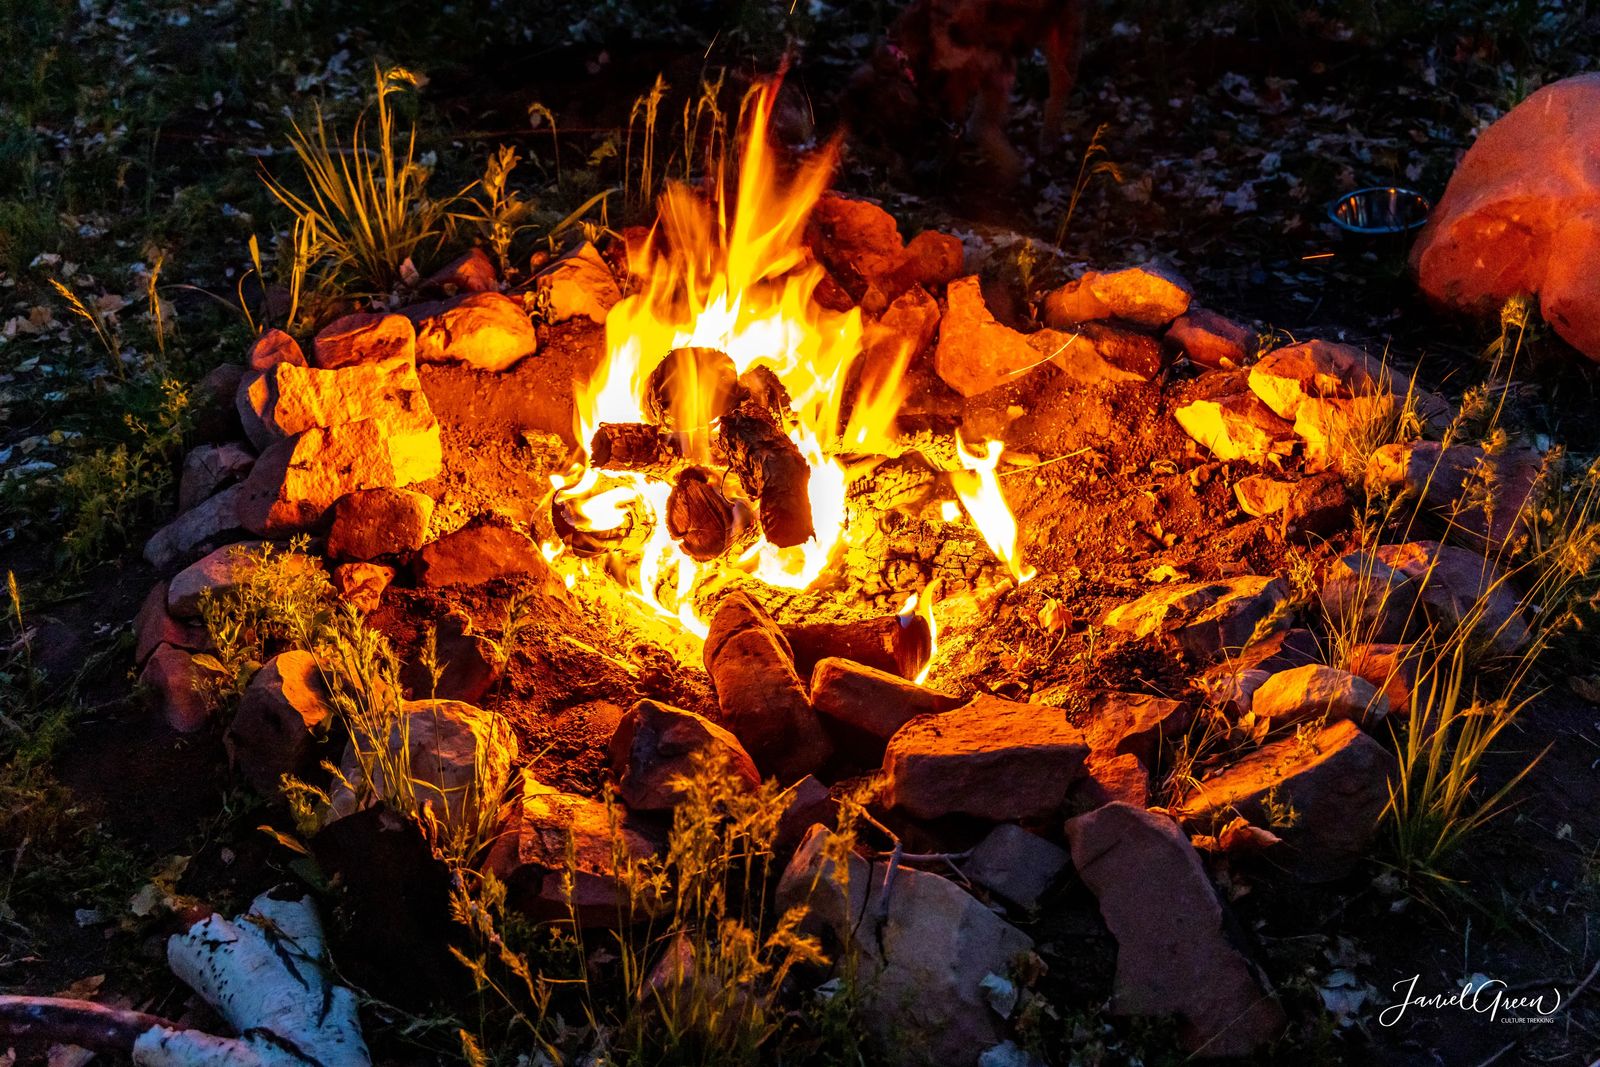 beautiful contrasting campfire, rules of camping in utah